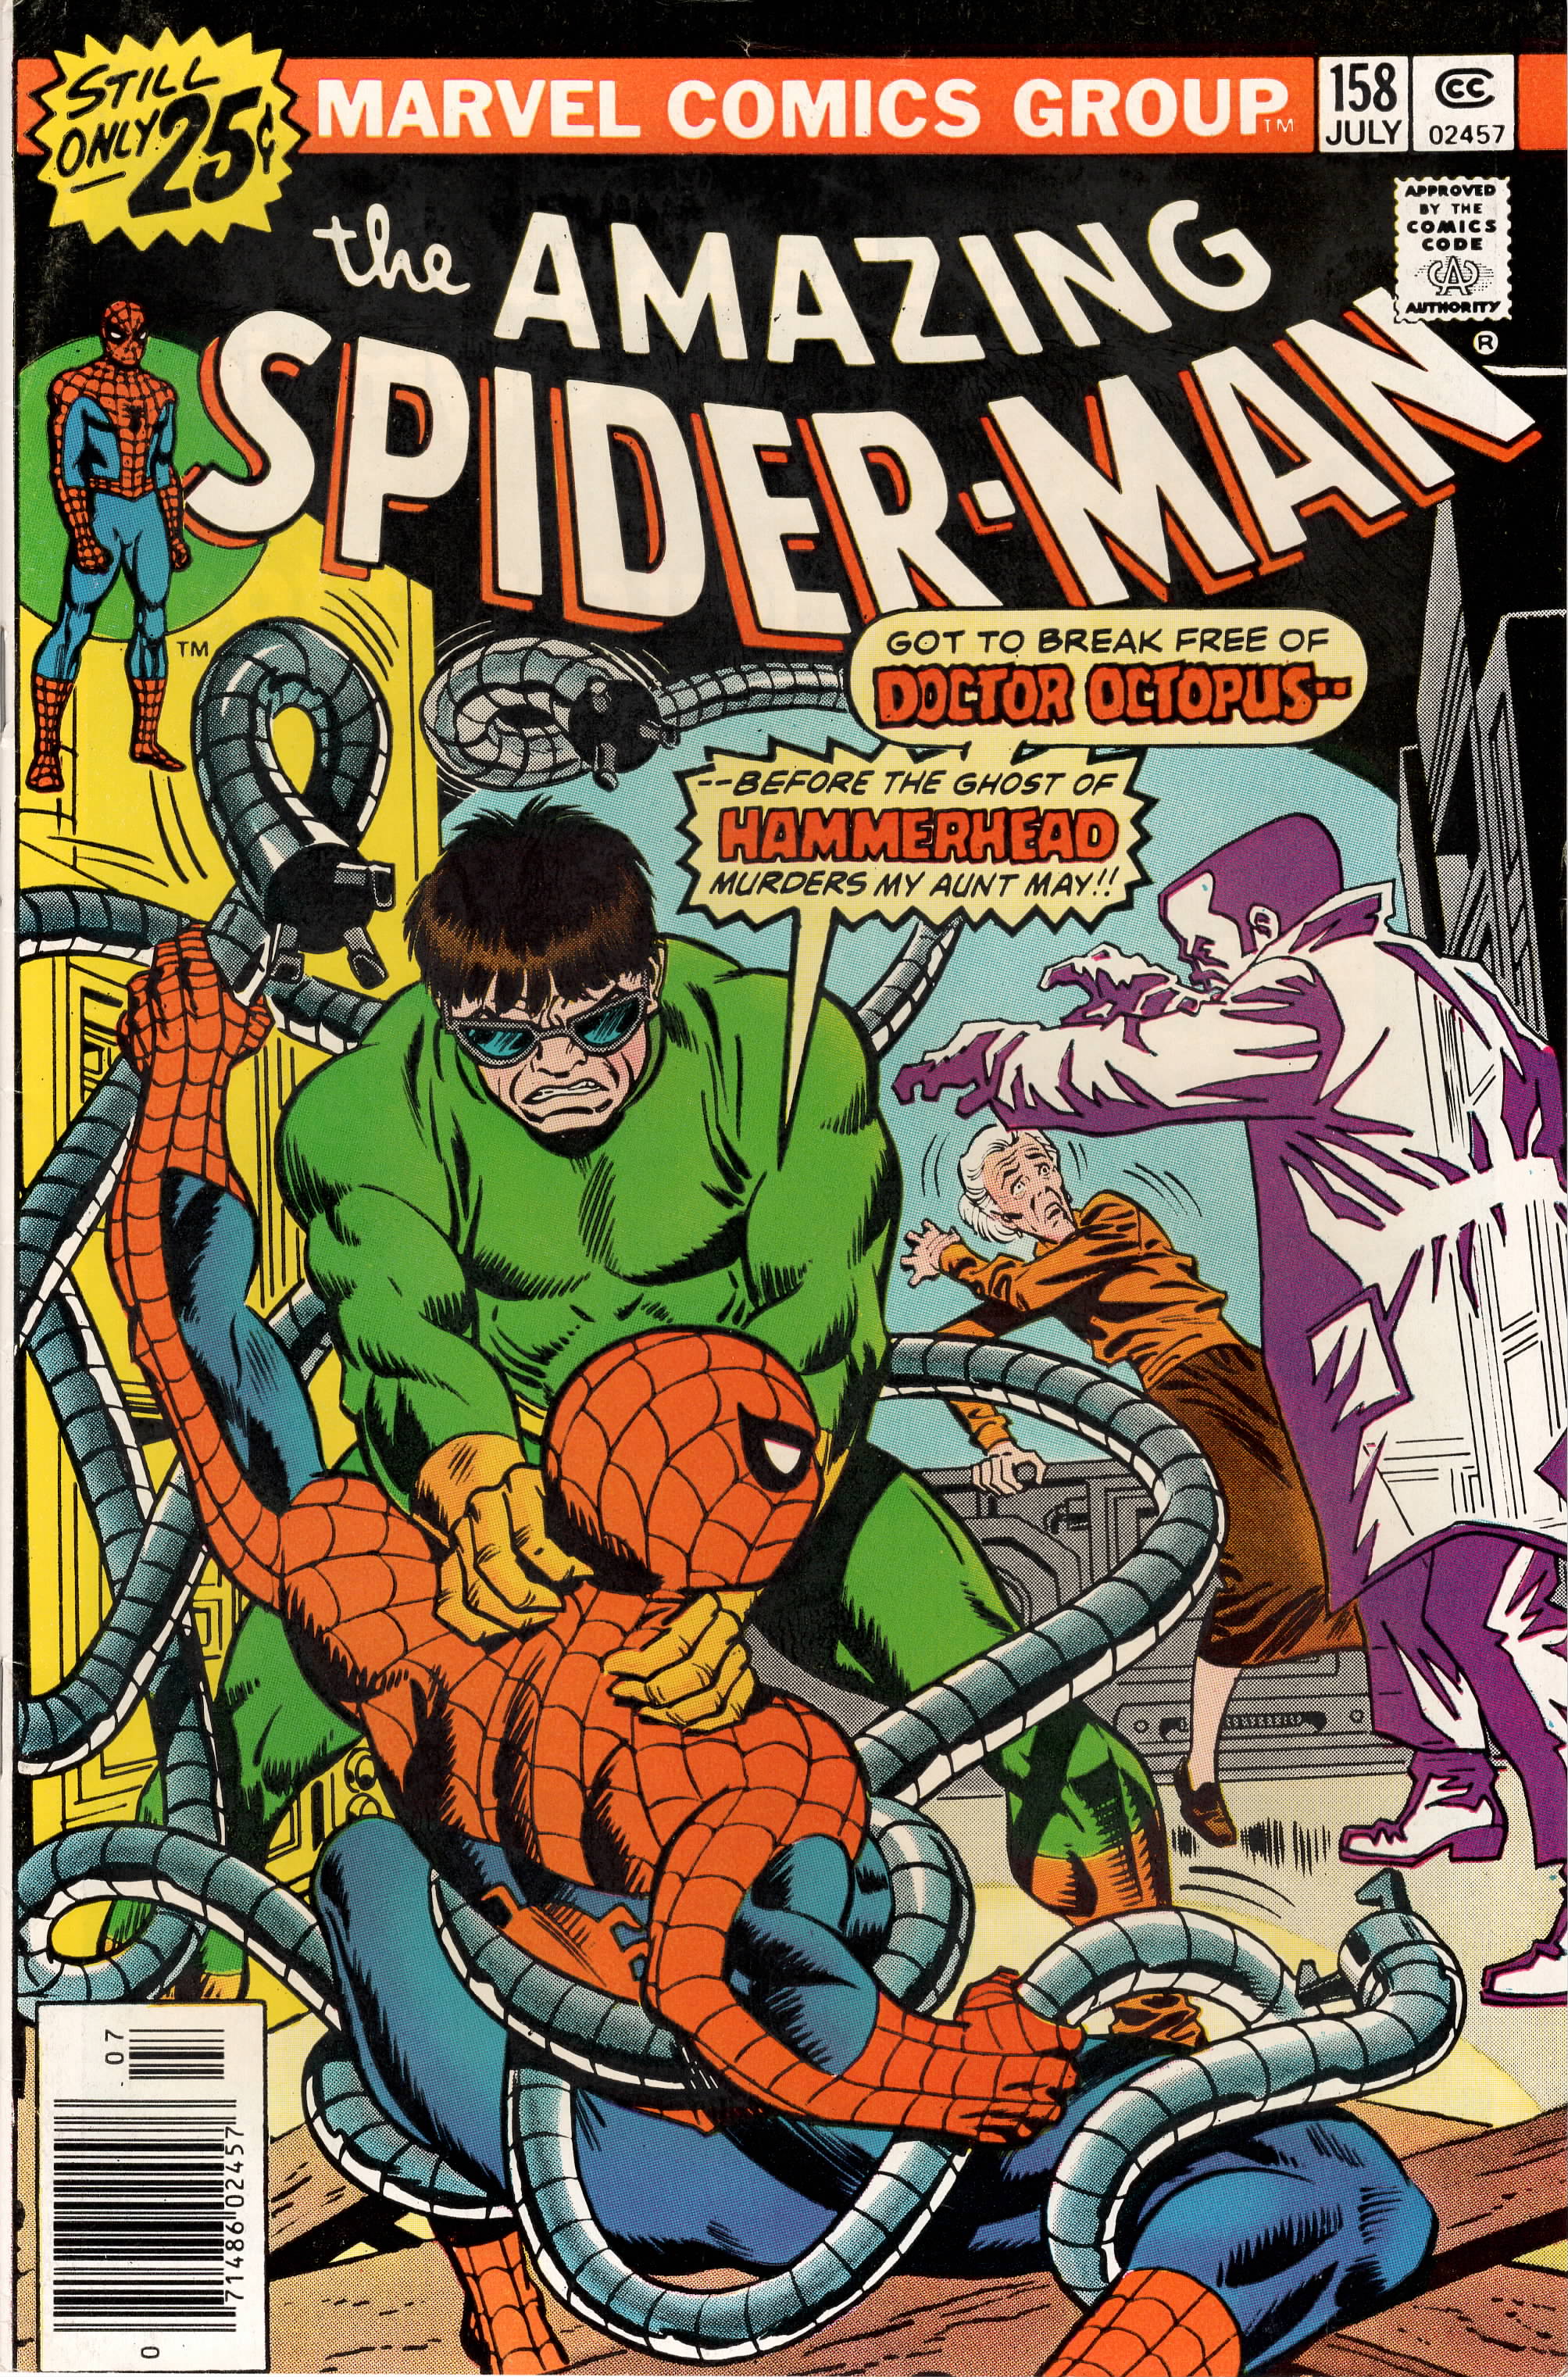 Amazing Spider-Man #158